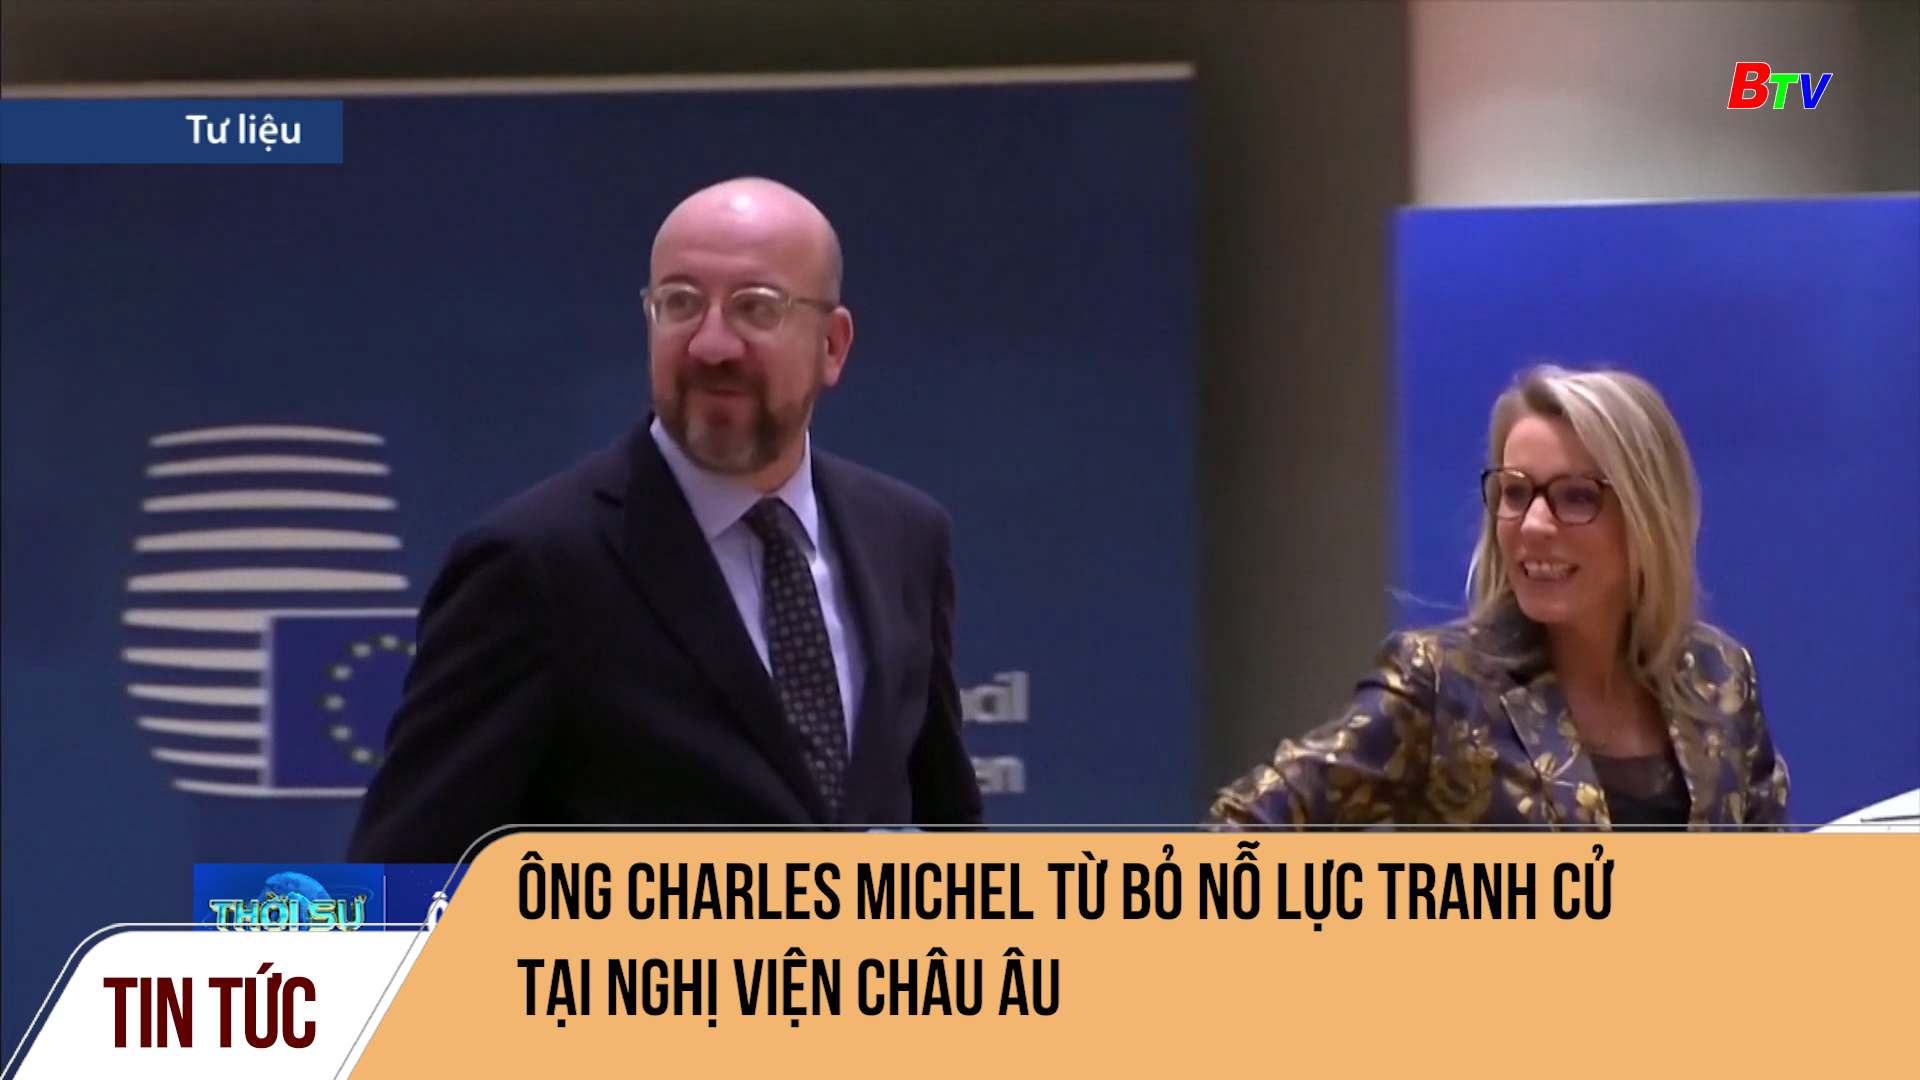 Ông Charles Michel từ bỏ nỗ lực tranh cử  tại nghị viện châu Âu